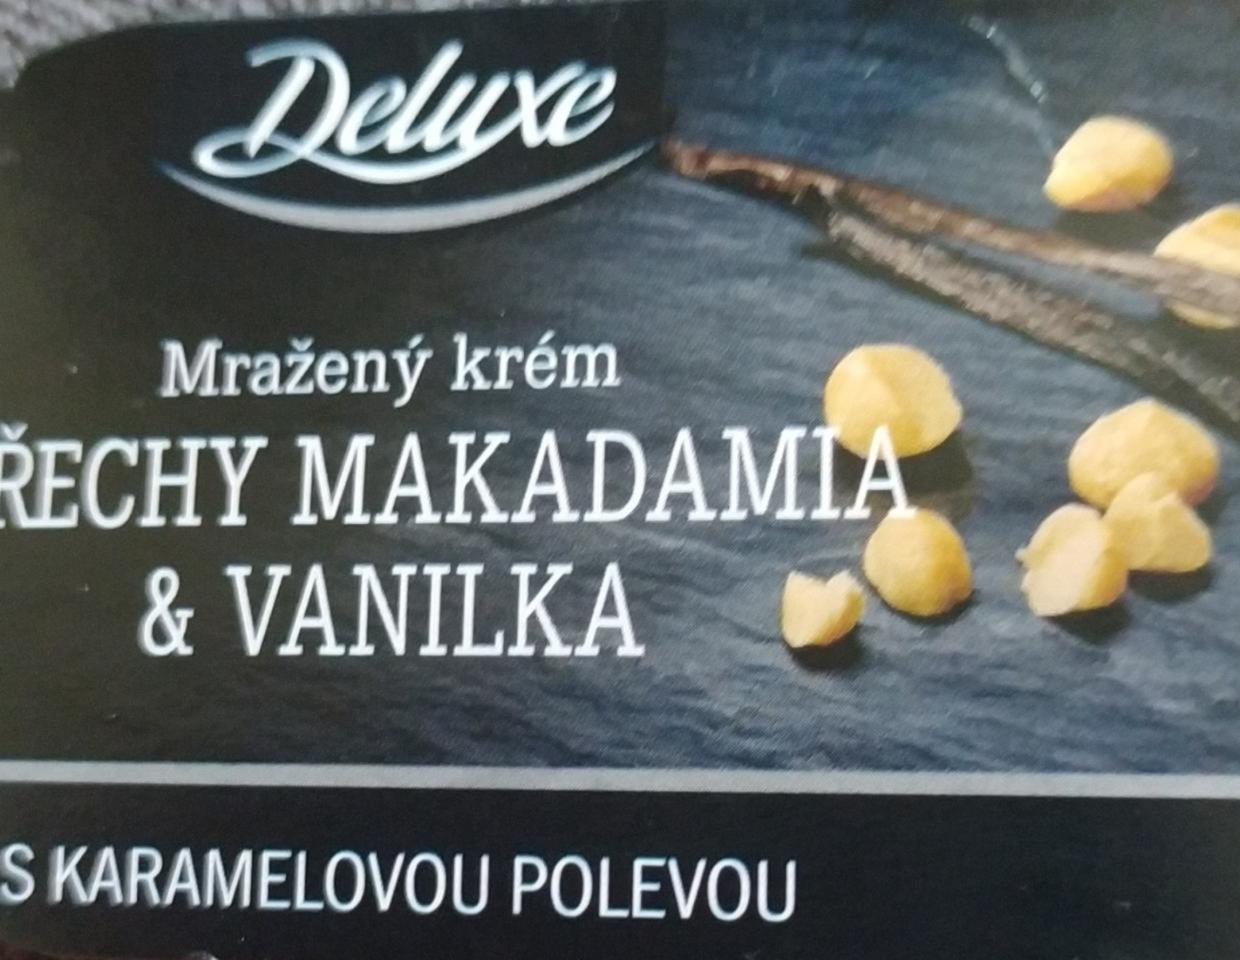 Fotografie - Mražený krém ořechy makadamia & vanilka s karamelovou polevou Deluxe